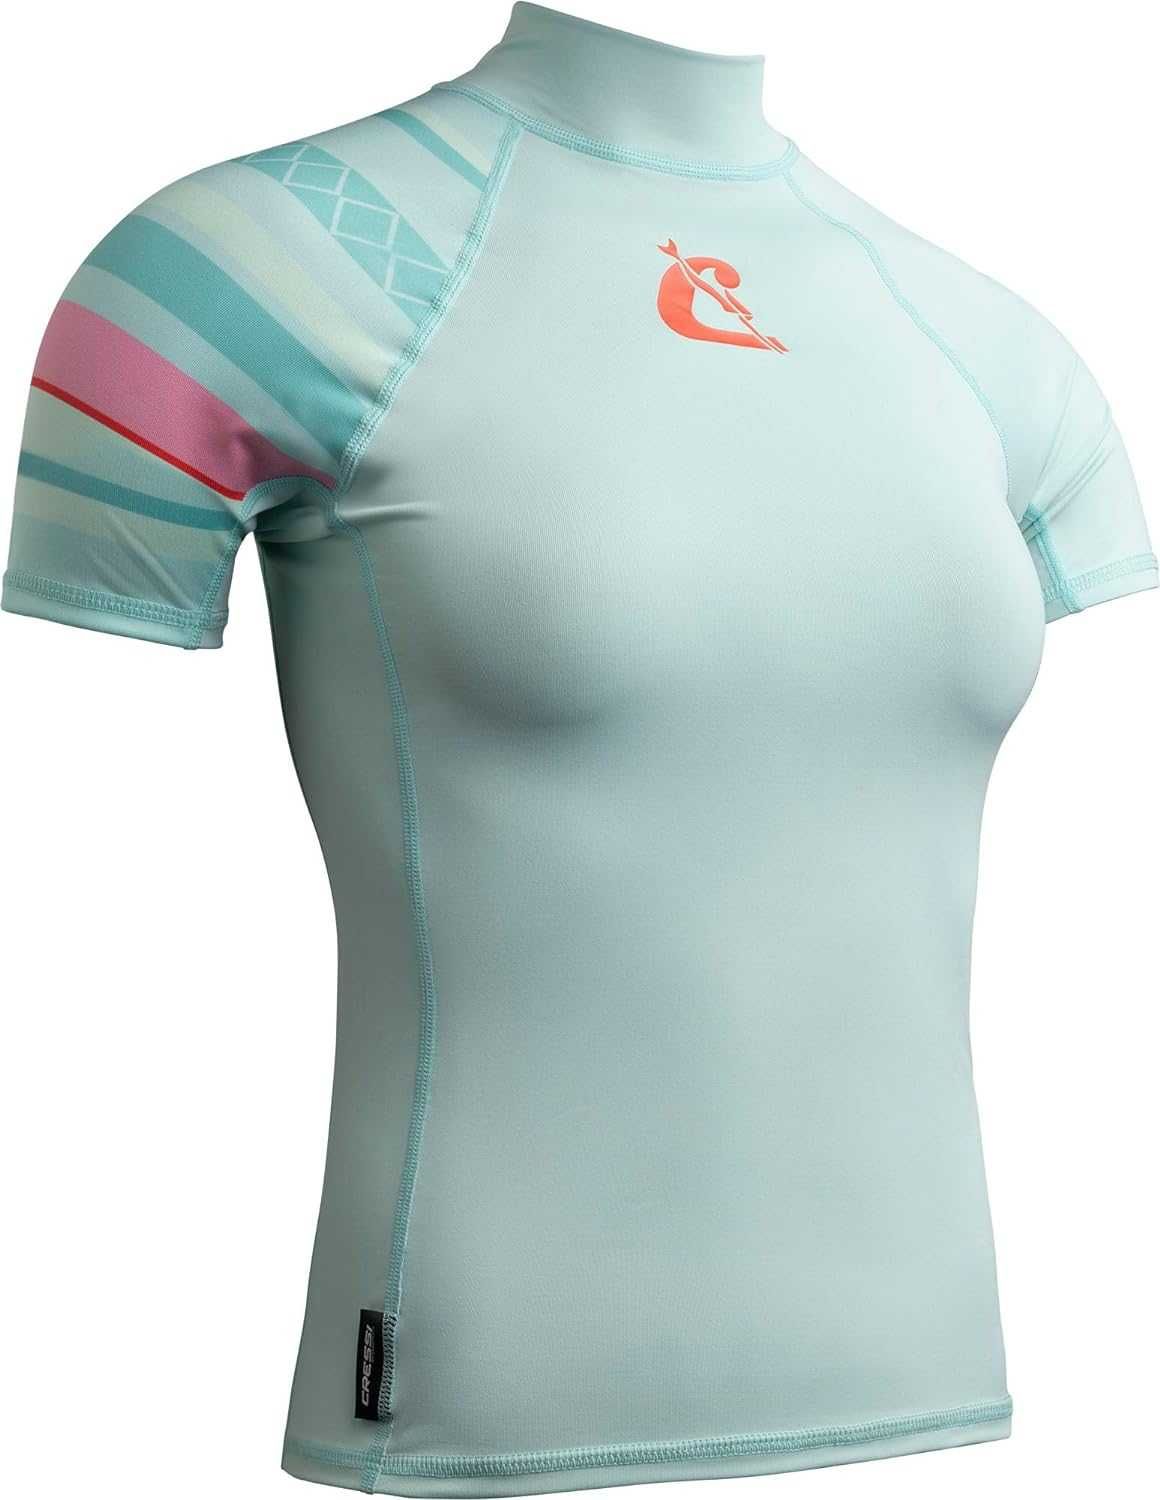 Дамска тениска CRESSI, защитна за водни спортове, S и M